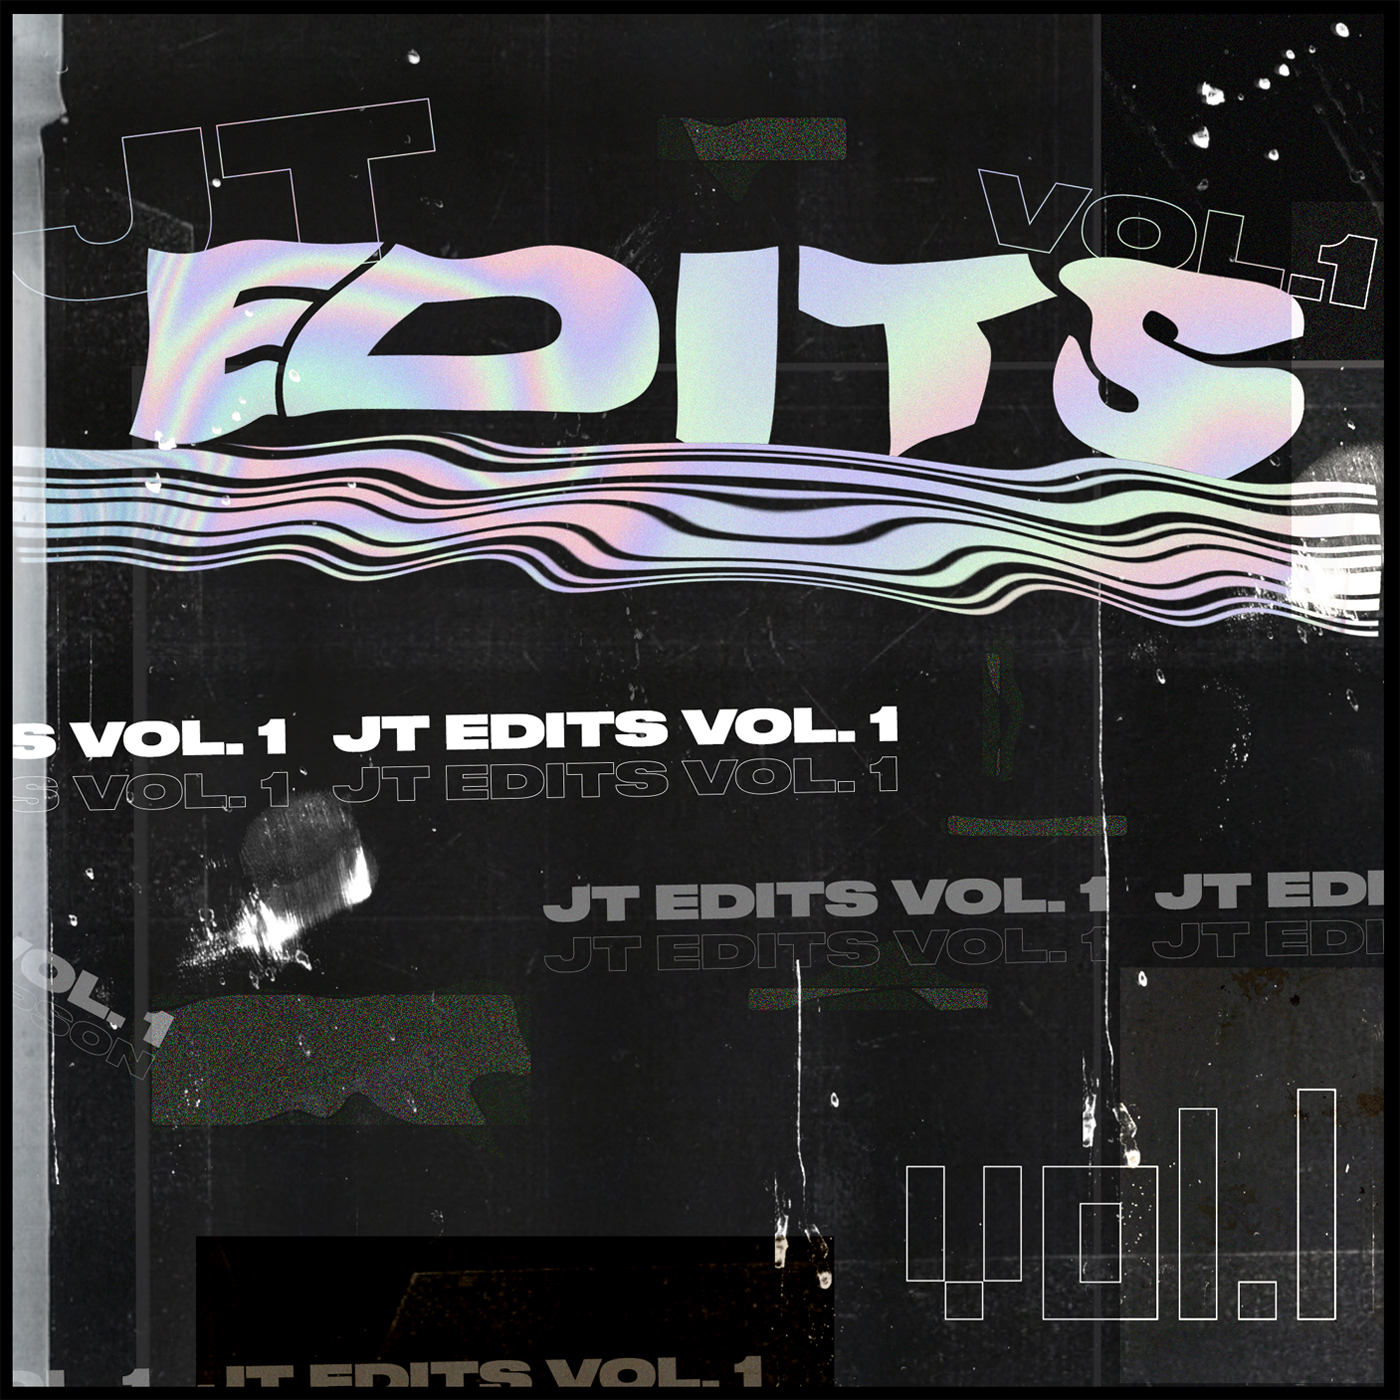 JT Edits Vol. 1